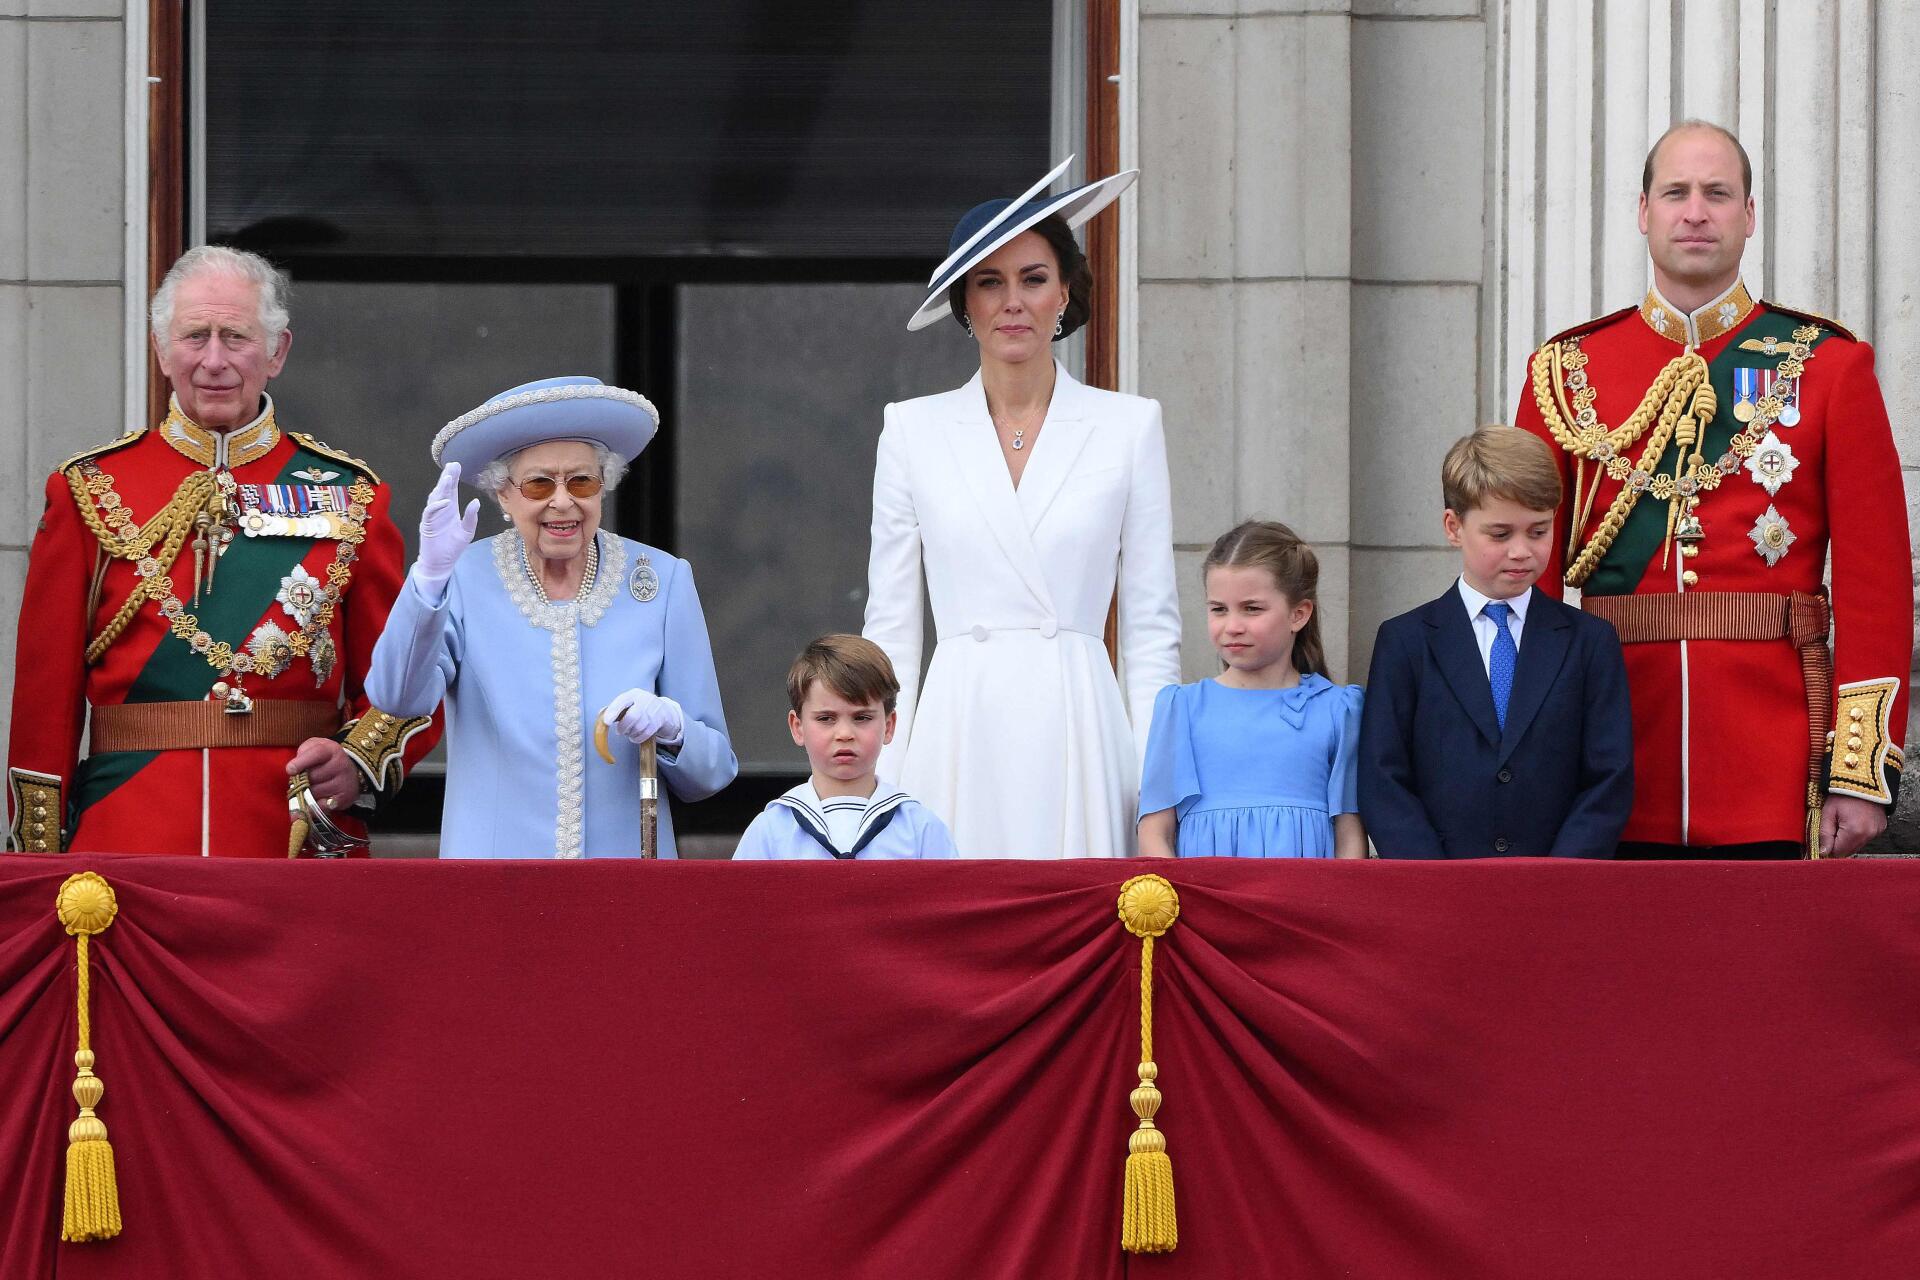 La reine Elizabeth II se tient avec le prince Charles, ainsi qu’avec Catherine, duchesse de Cambridge, le prince William, duc de Cambridge, et leurs trois enfants pour assister à un défilé aérien spécial depuis le balcon du palais de Buckingham, le 2 juin 2022.

